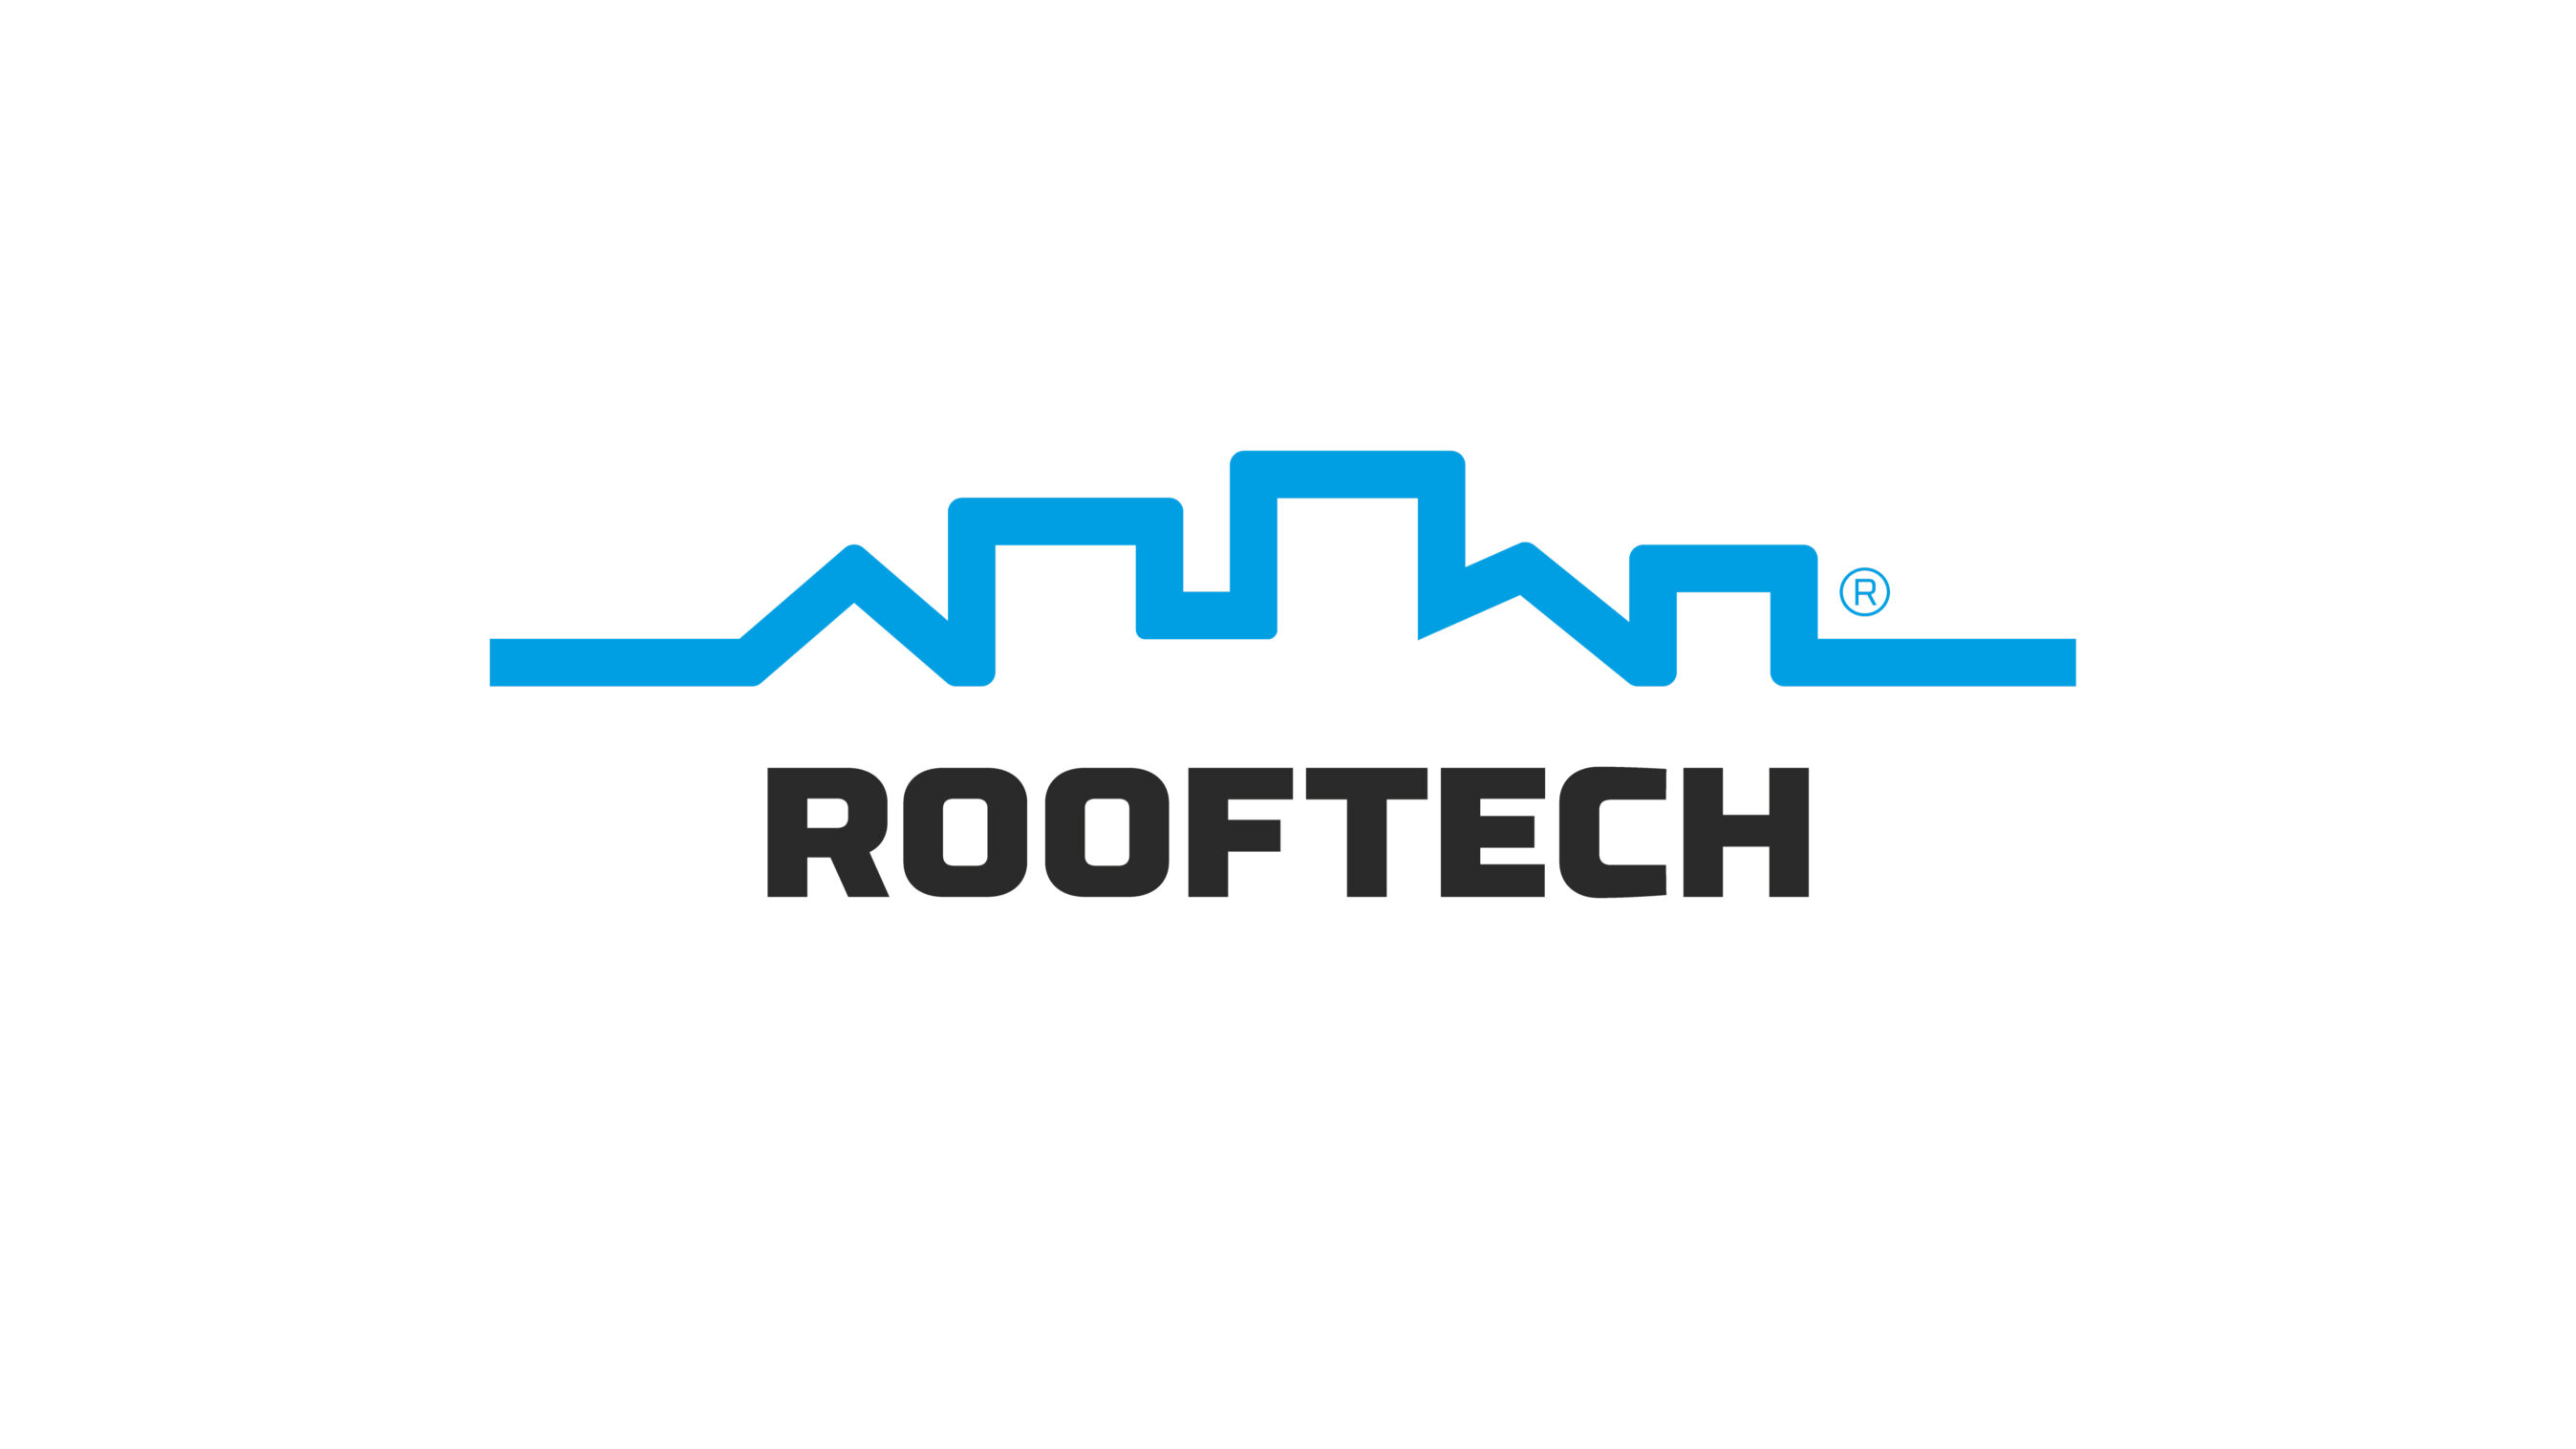 Firmen-Logo als Hauptelement des Brandings Corporate Designs der Firma Rooftech AG. Blaue Linie formt eine Skyline, die Wortmarke unten in schwarz mit einer kräftigen, technischer Schrift.